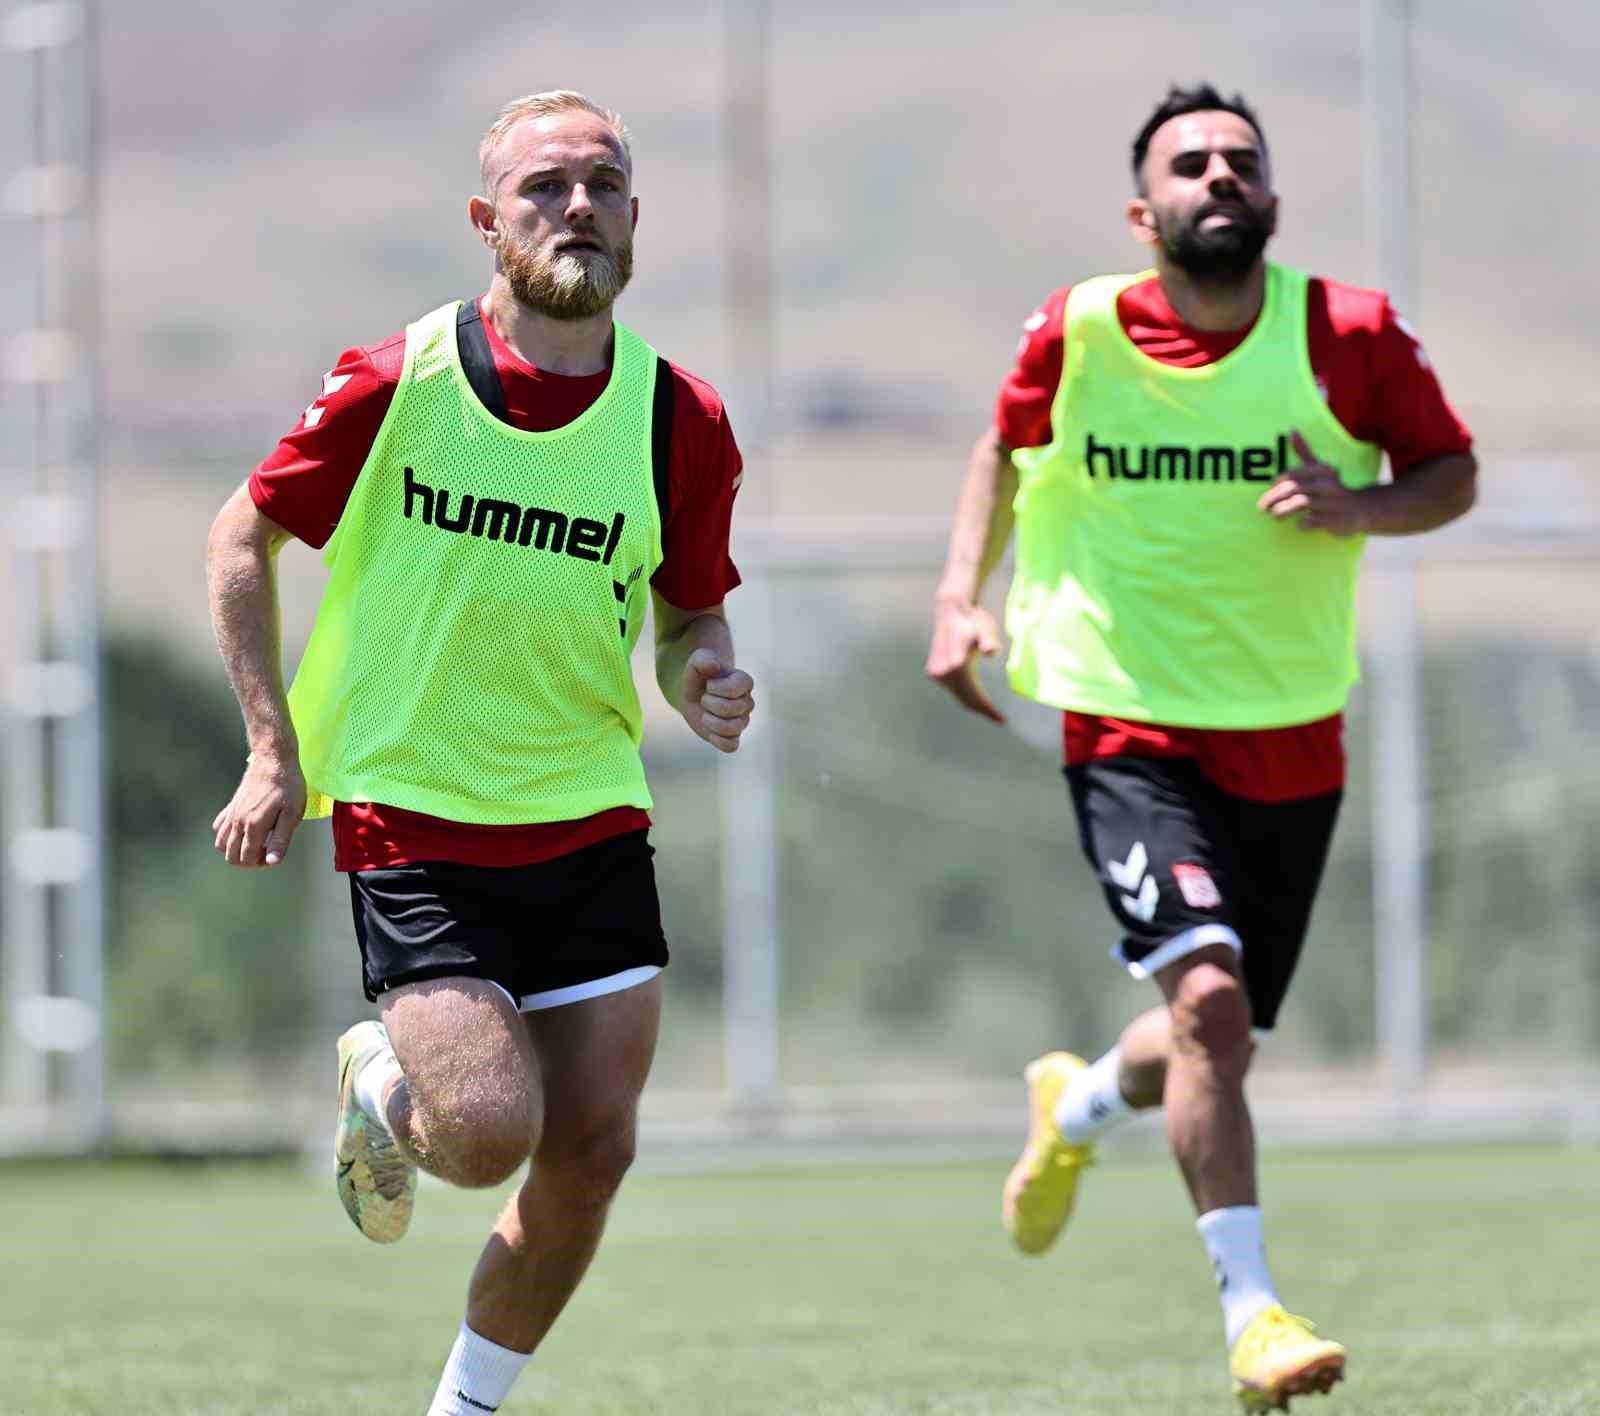 Sivasspor, yeni sezona iddialı hazırlanıyor
